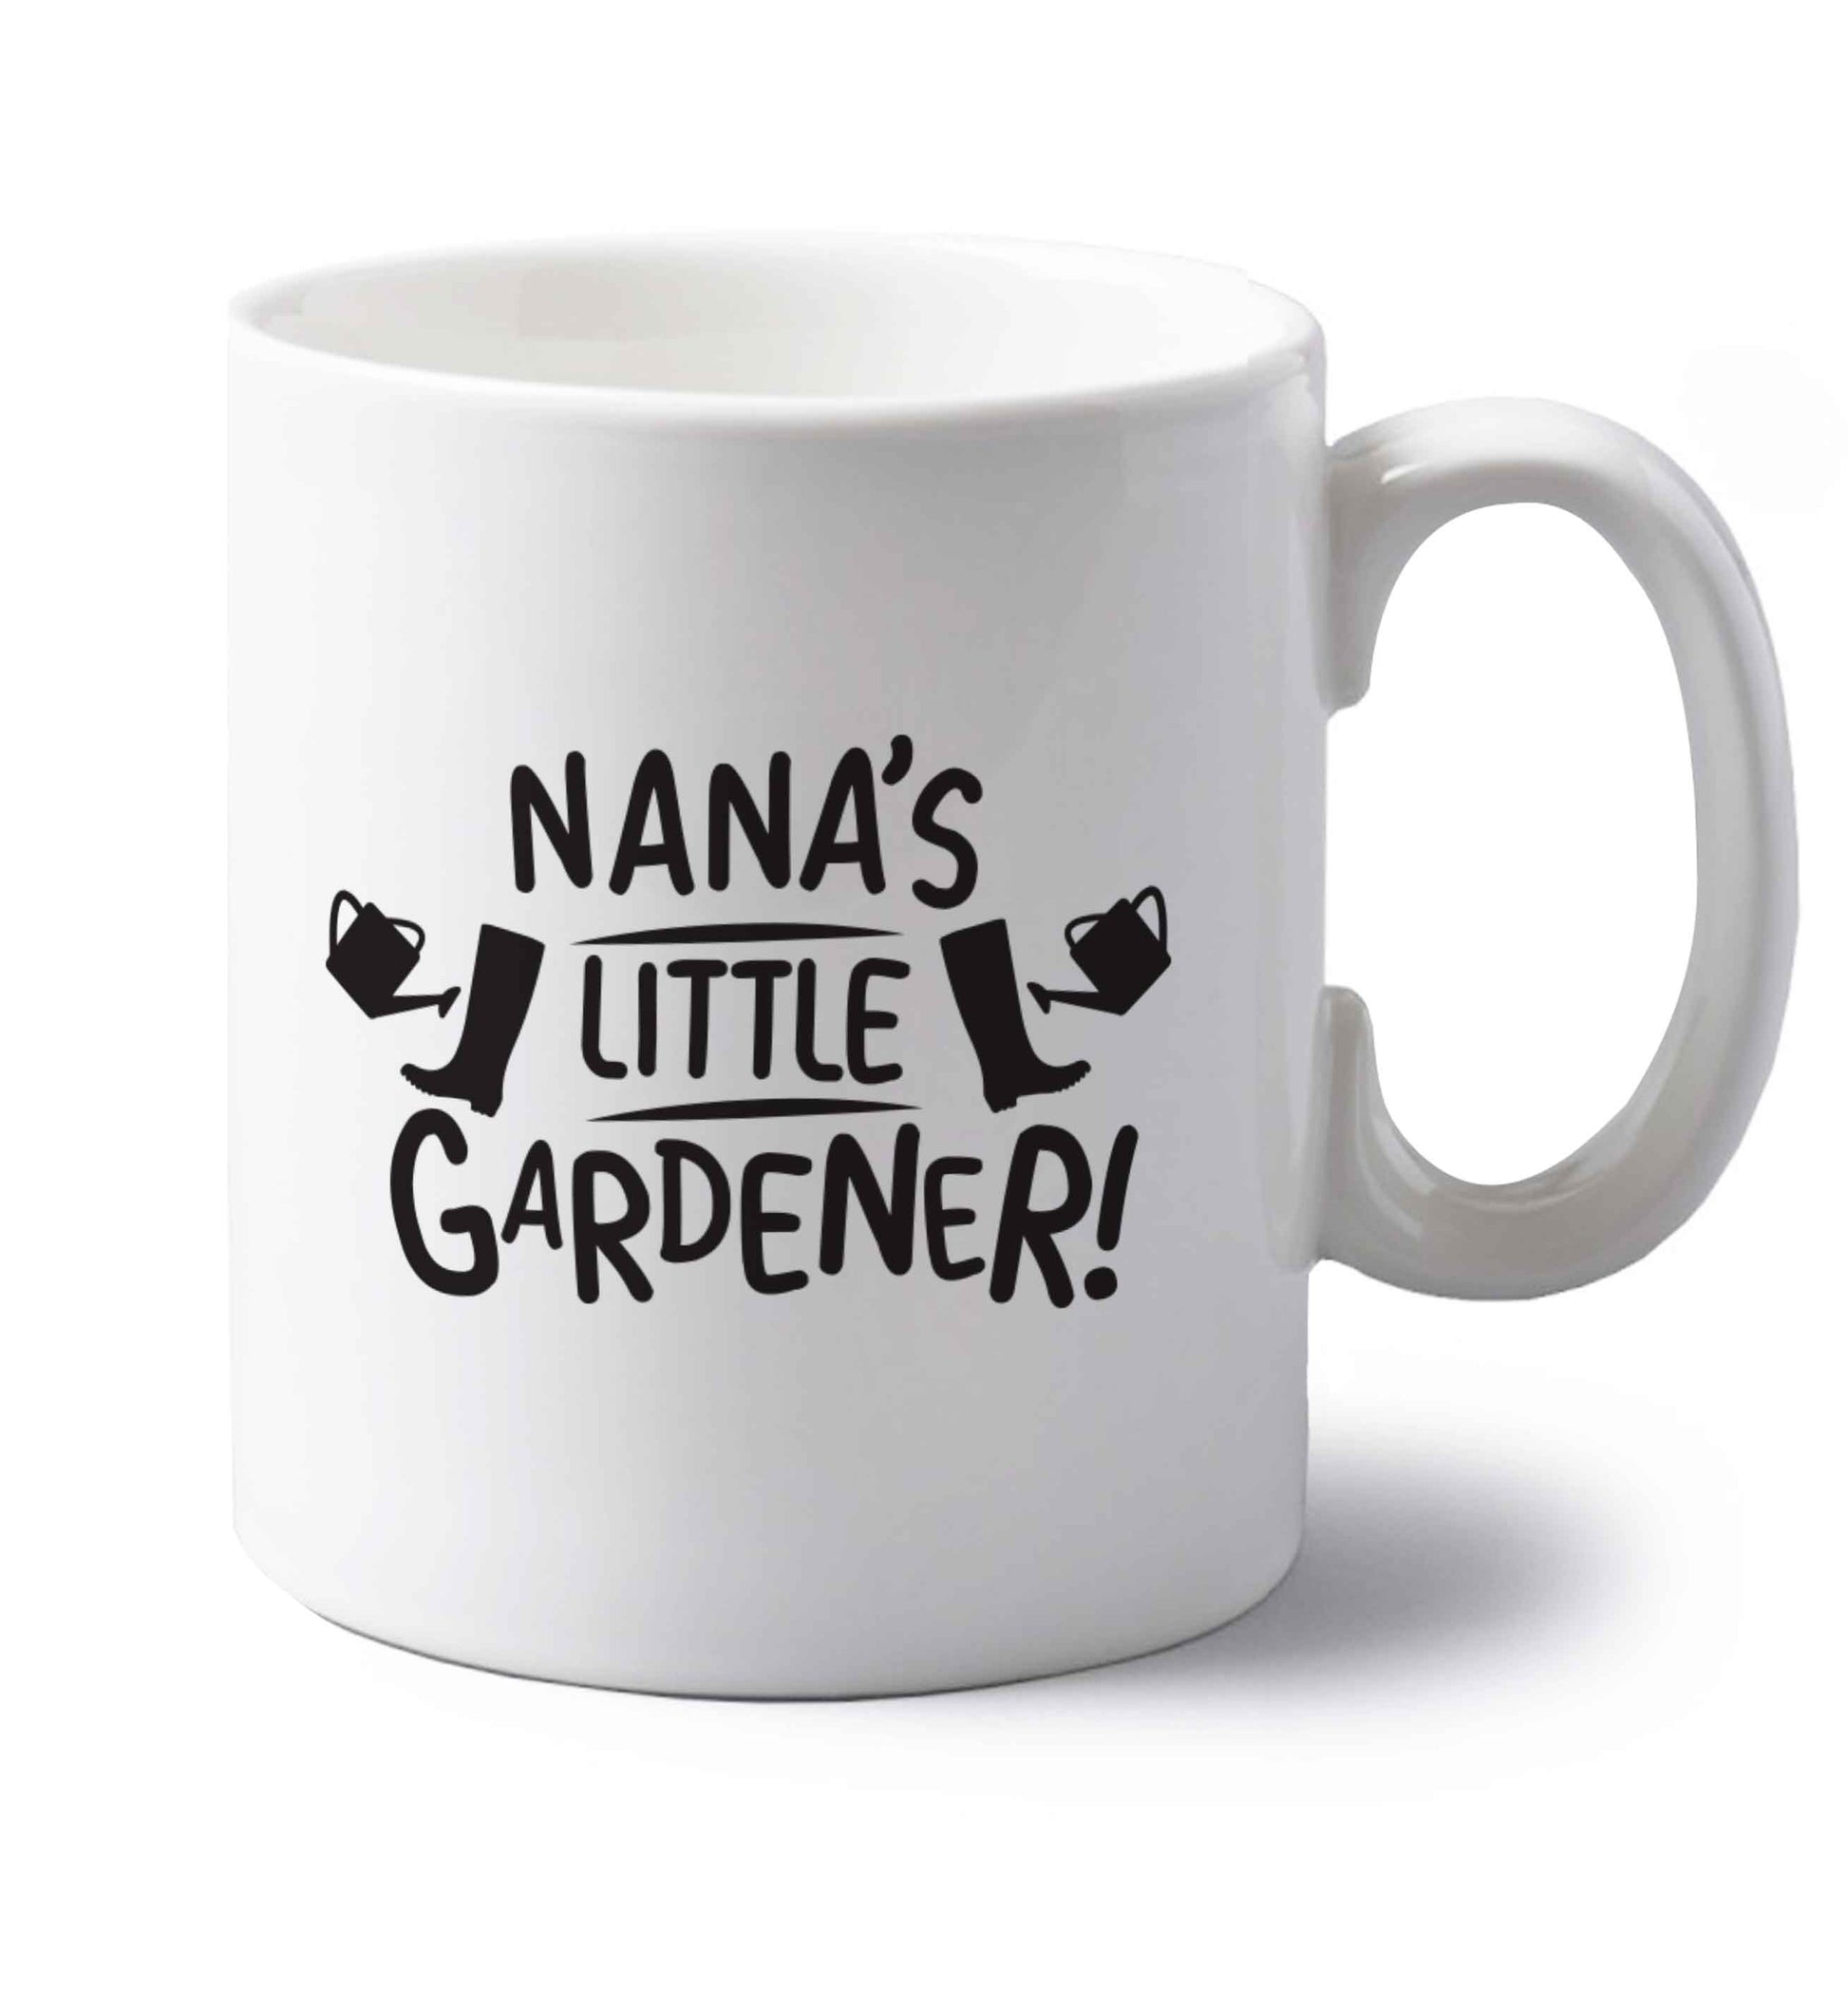 Nana's little gardener left handed white ceramic mug 